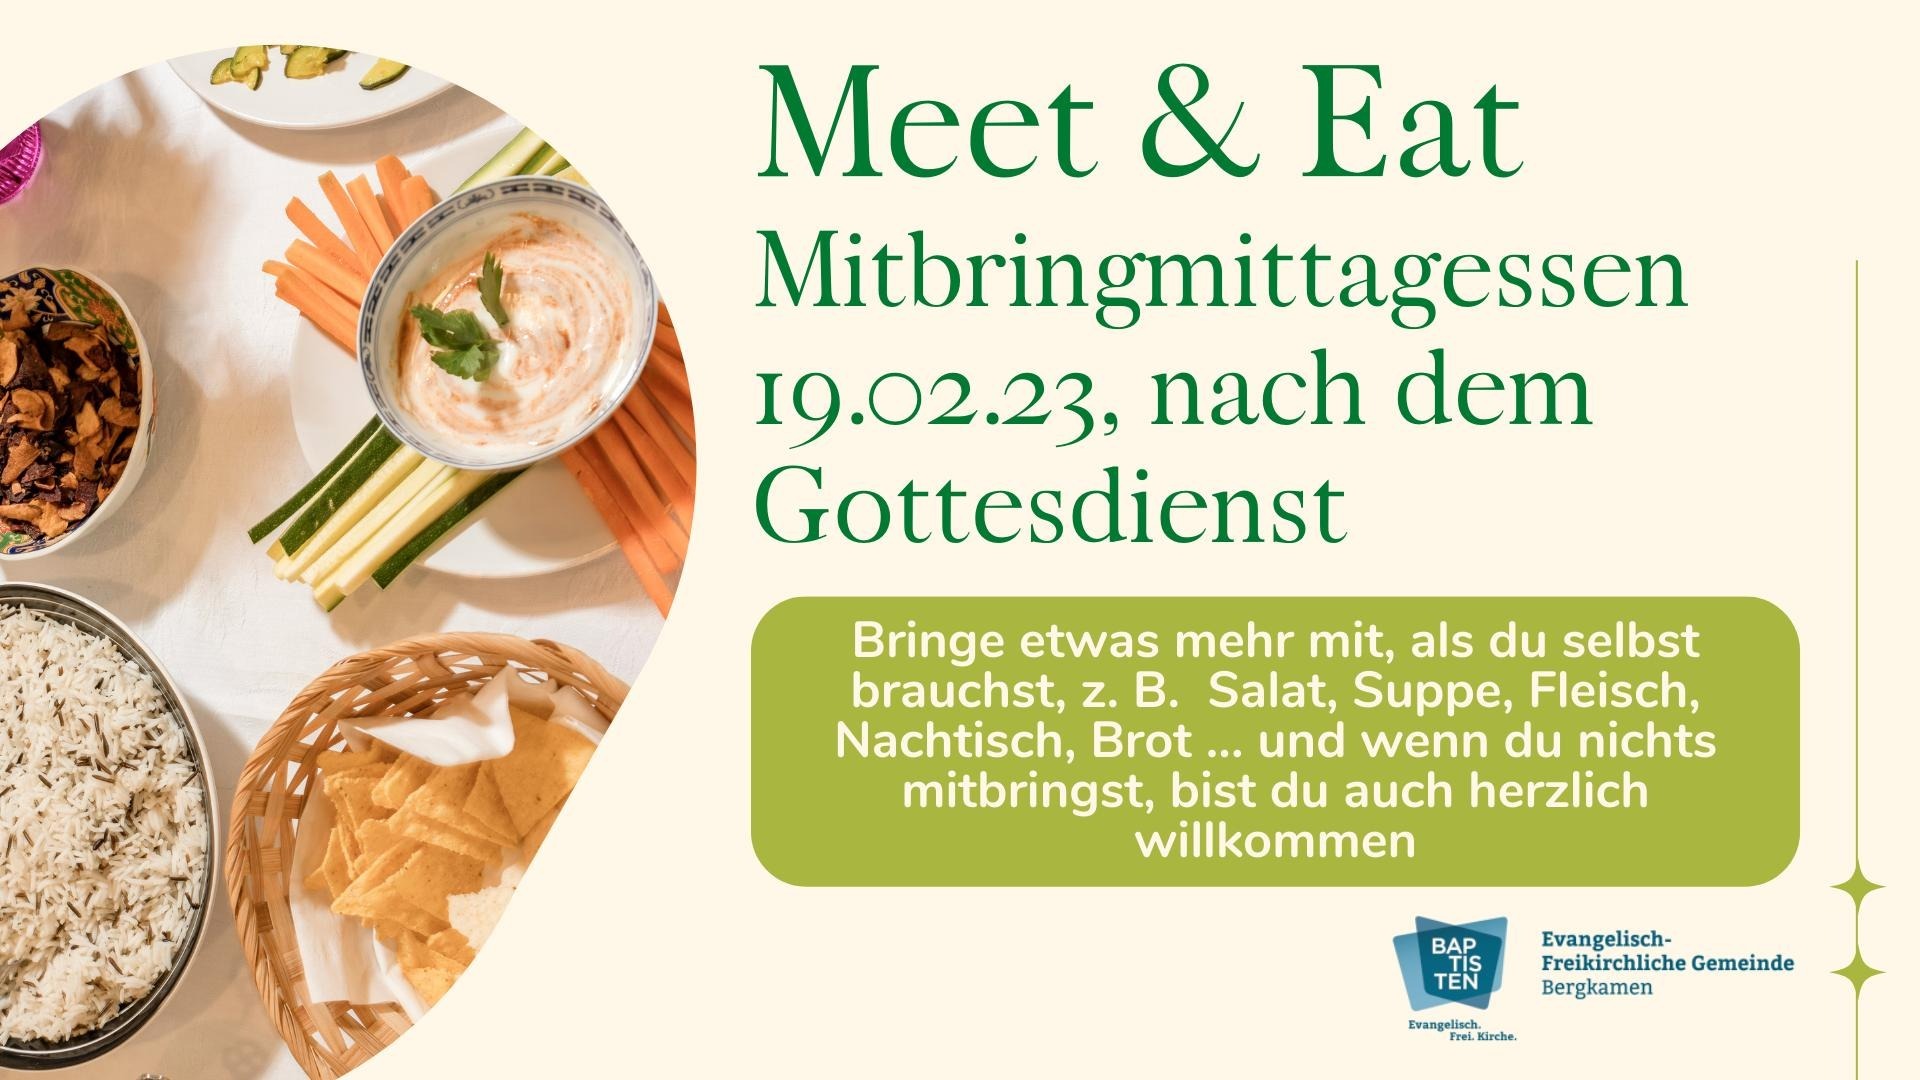 Meet & Eat, 19.02.2023